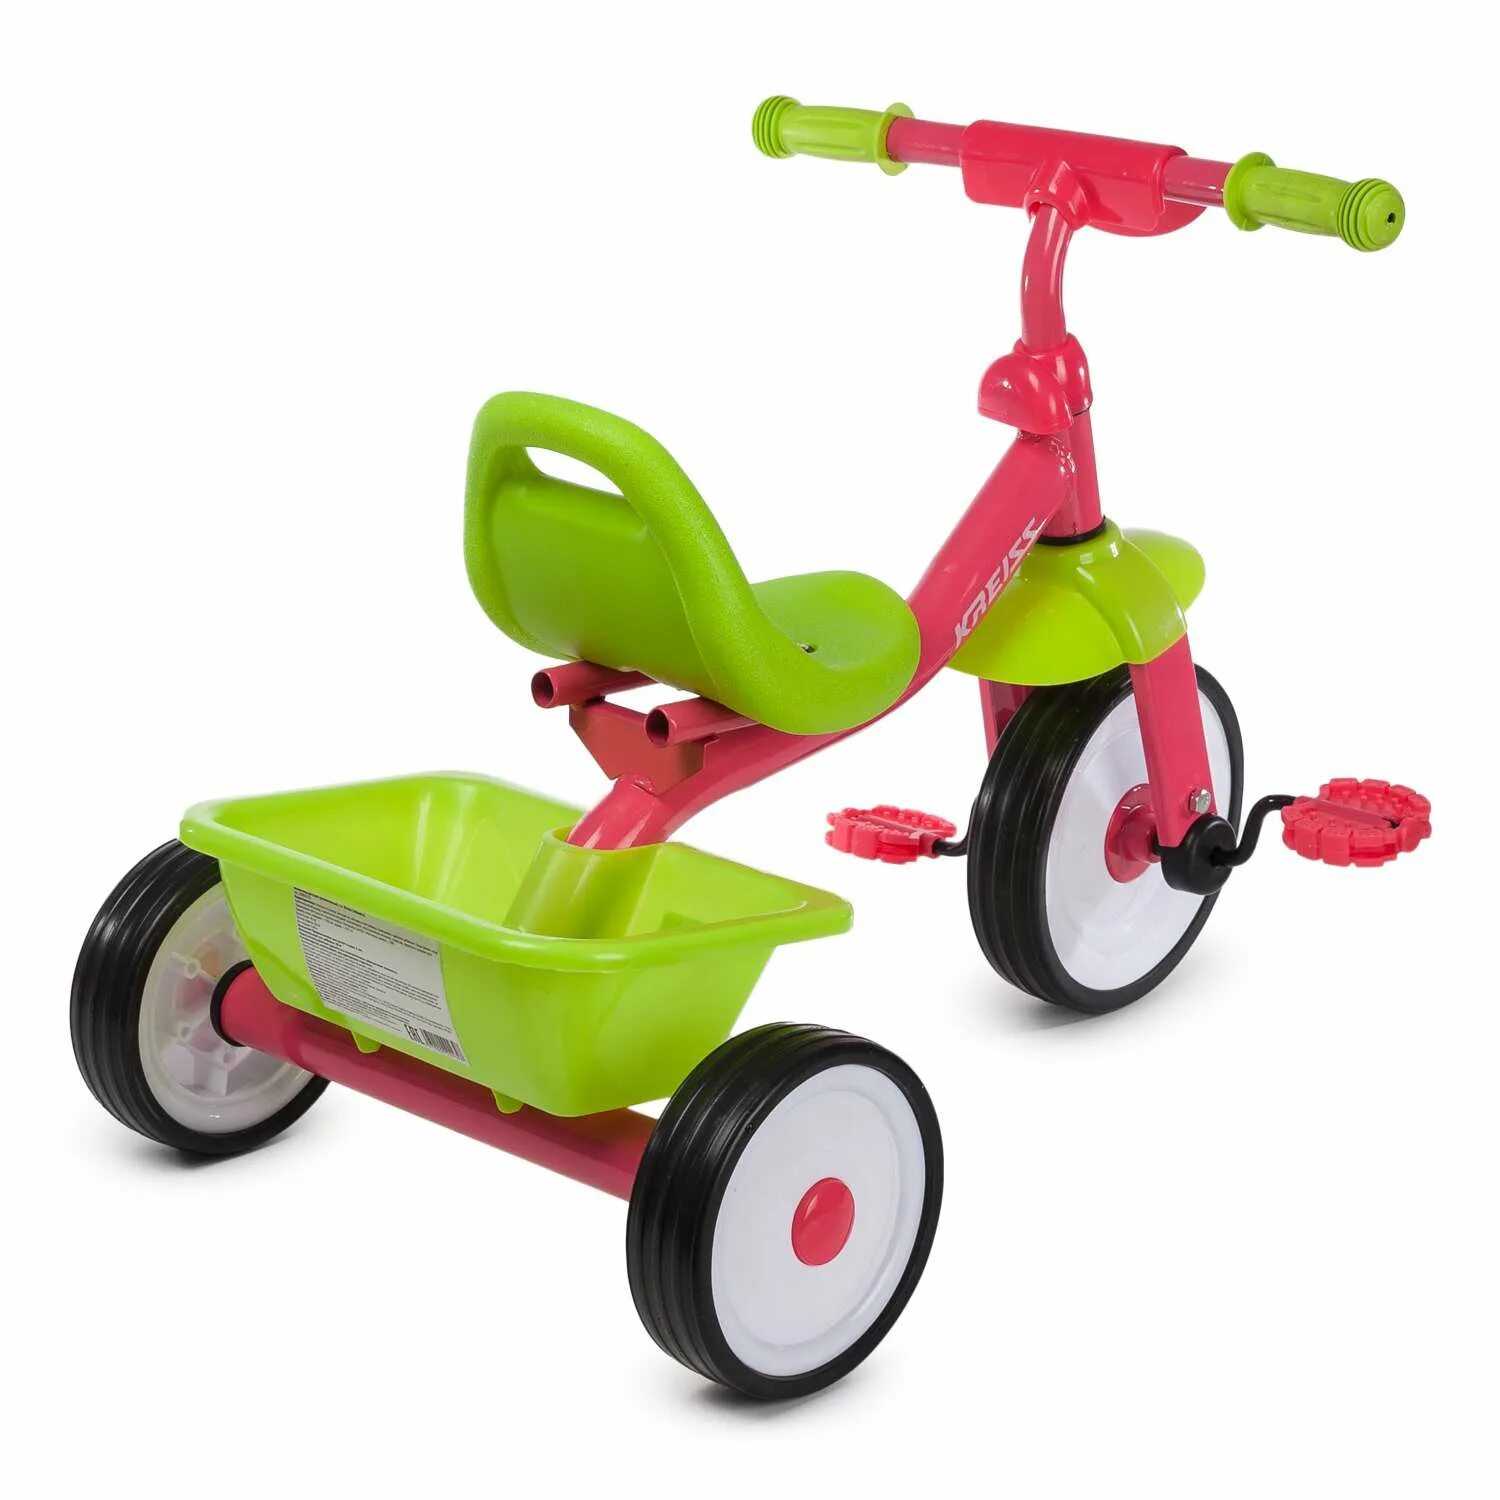 Kreiss велосипед трехколесный с ручкой. Детский велосипед Kreiss трехколесный. Трехколесный велосипед Kreiss зеленый. Kreiss велосипед трехколесный розовый. Велосипед детский Kreiss 326 трехколесный.